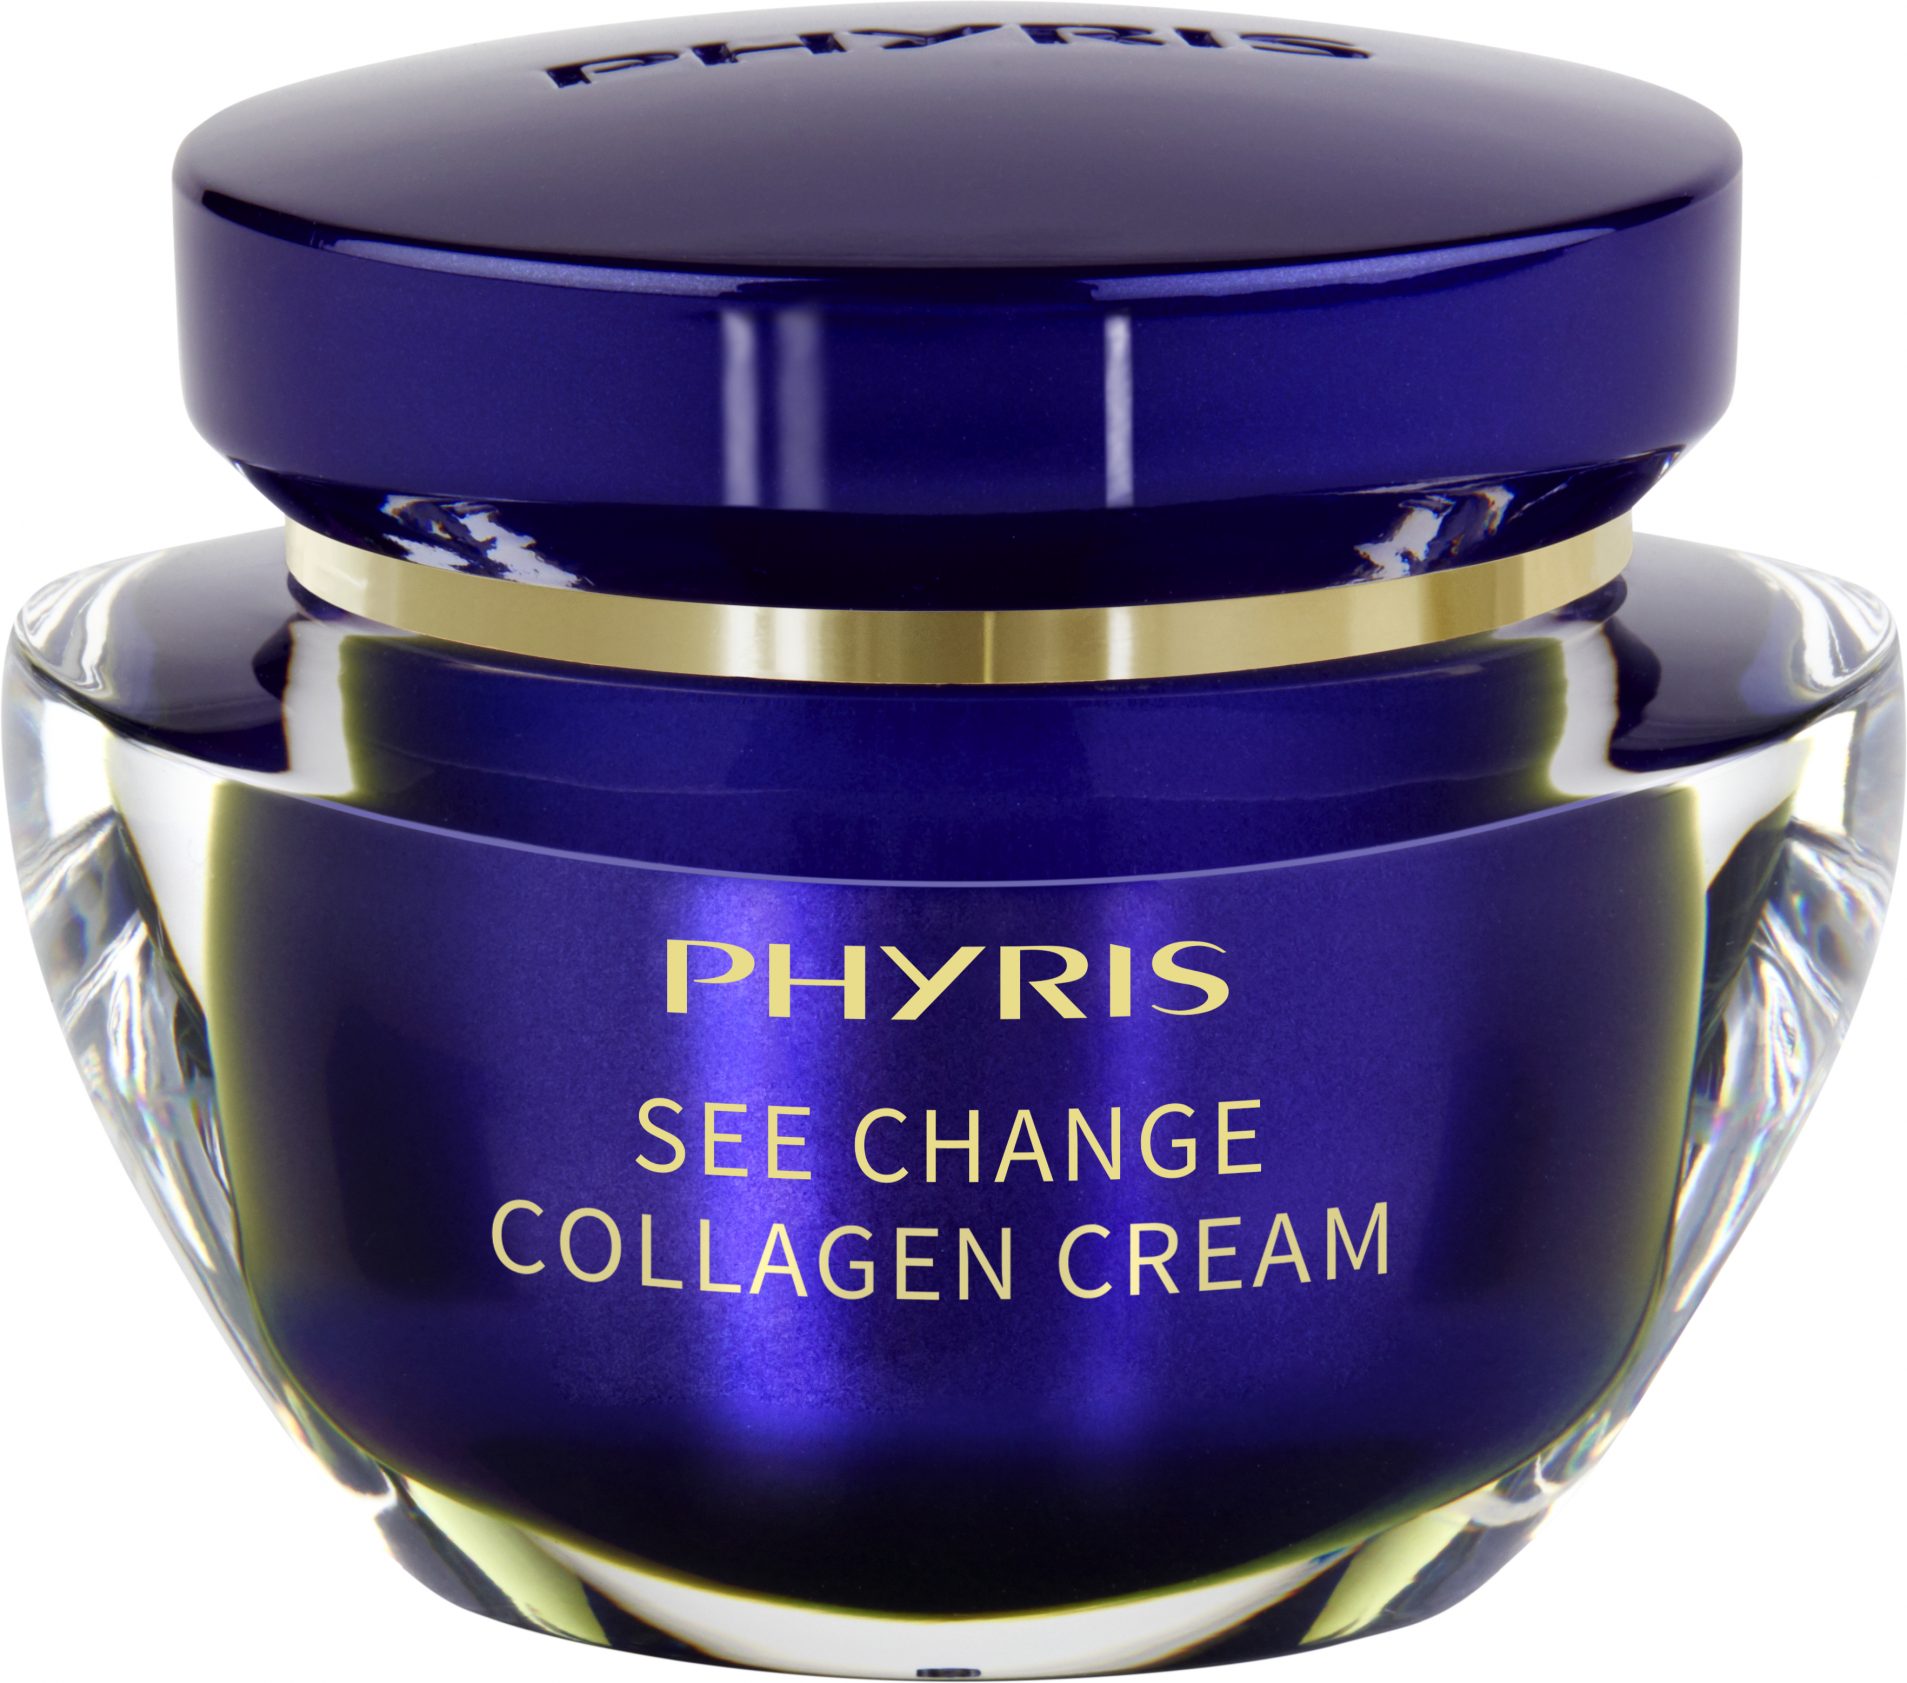 Collagen cream - Kem dưỡng săn chắc, sáng da từ collagen dưới biển sâu